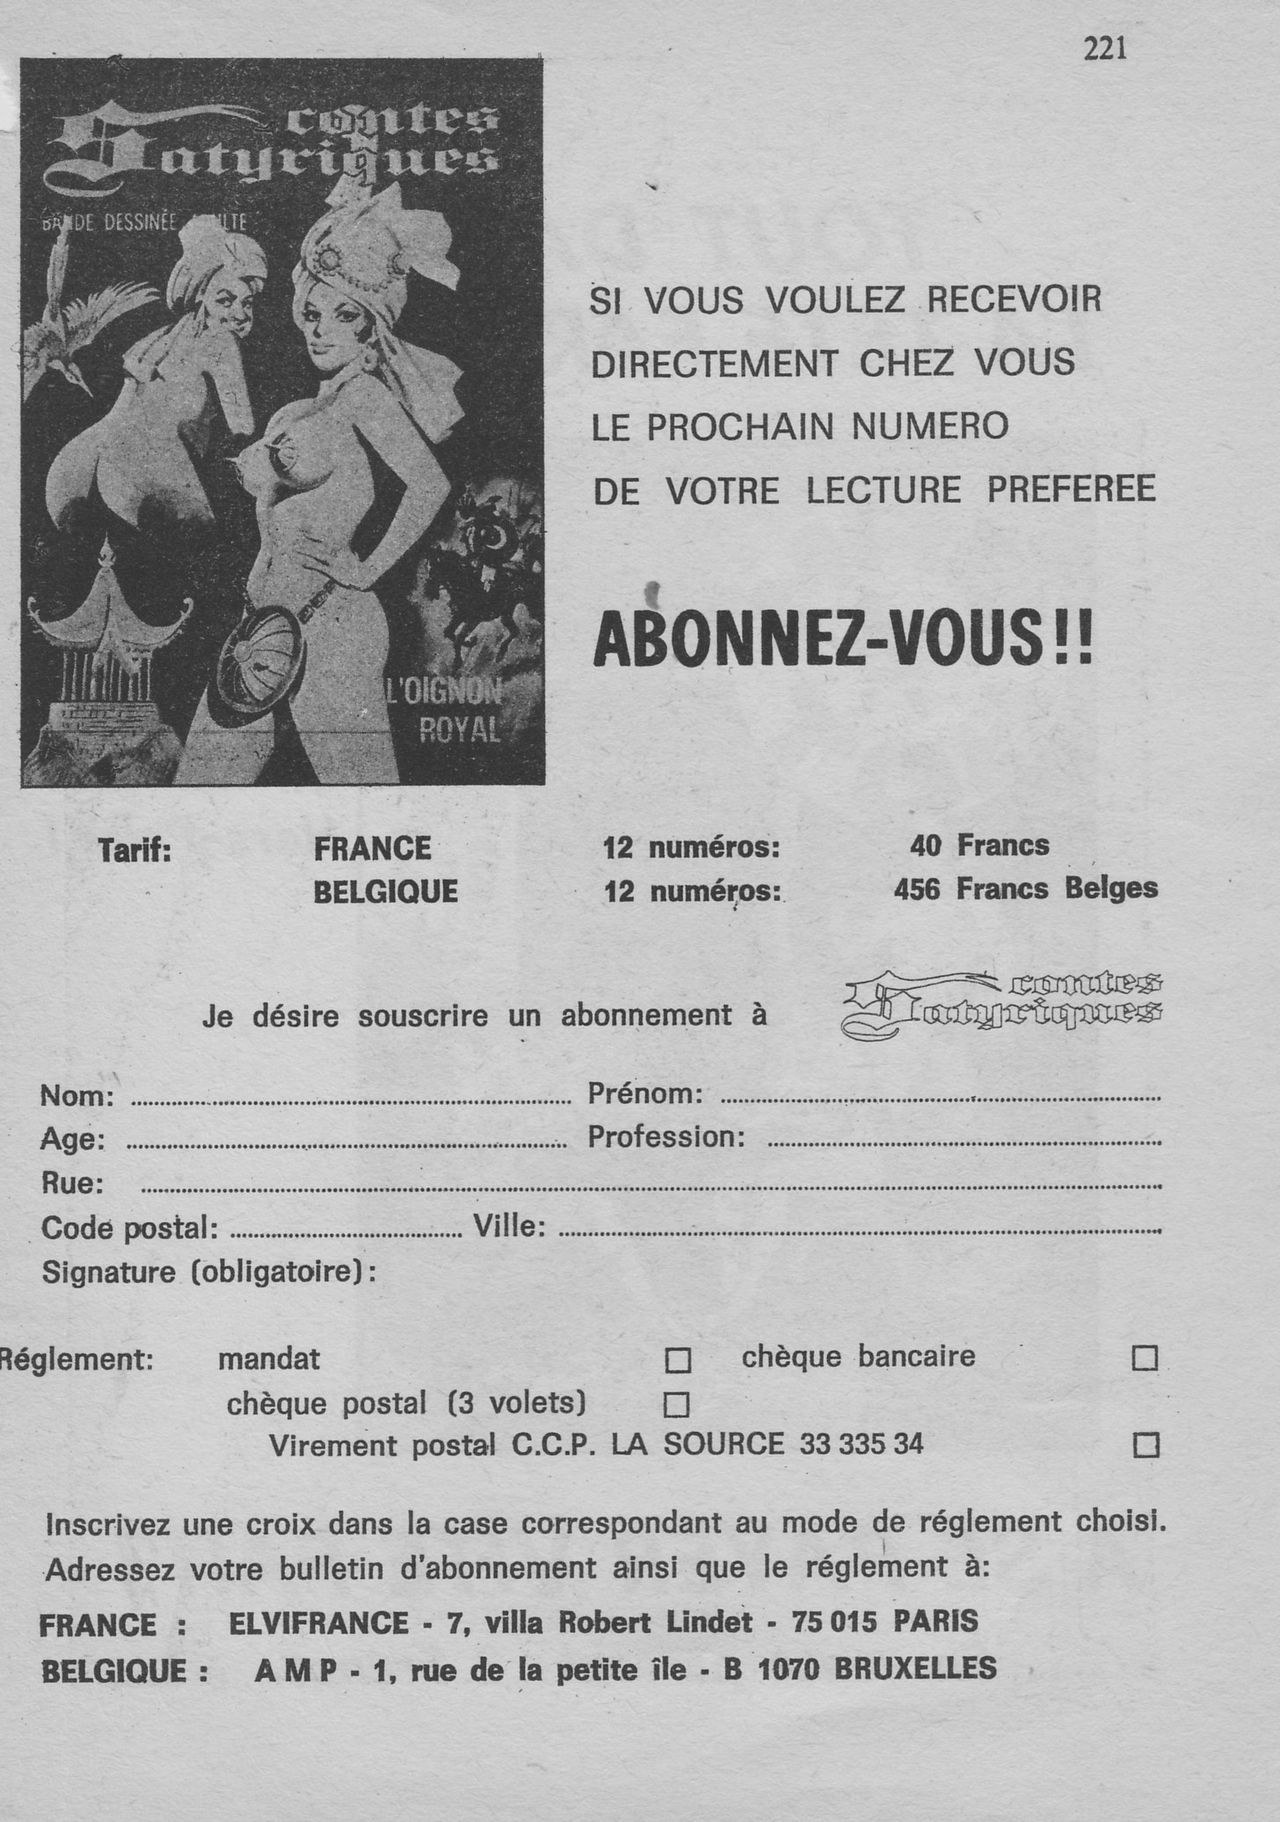 Elvifrance - Contes satyriques - 014 - Gros Jean comme devant numero d'image 220